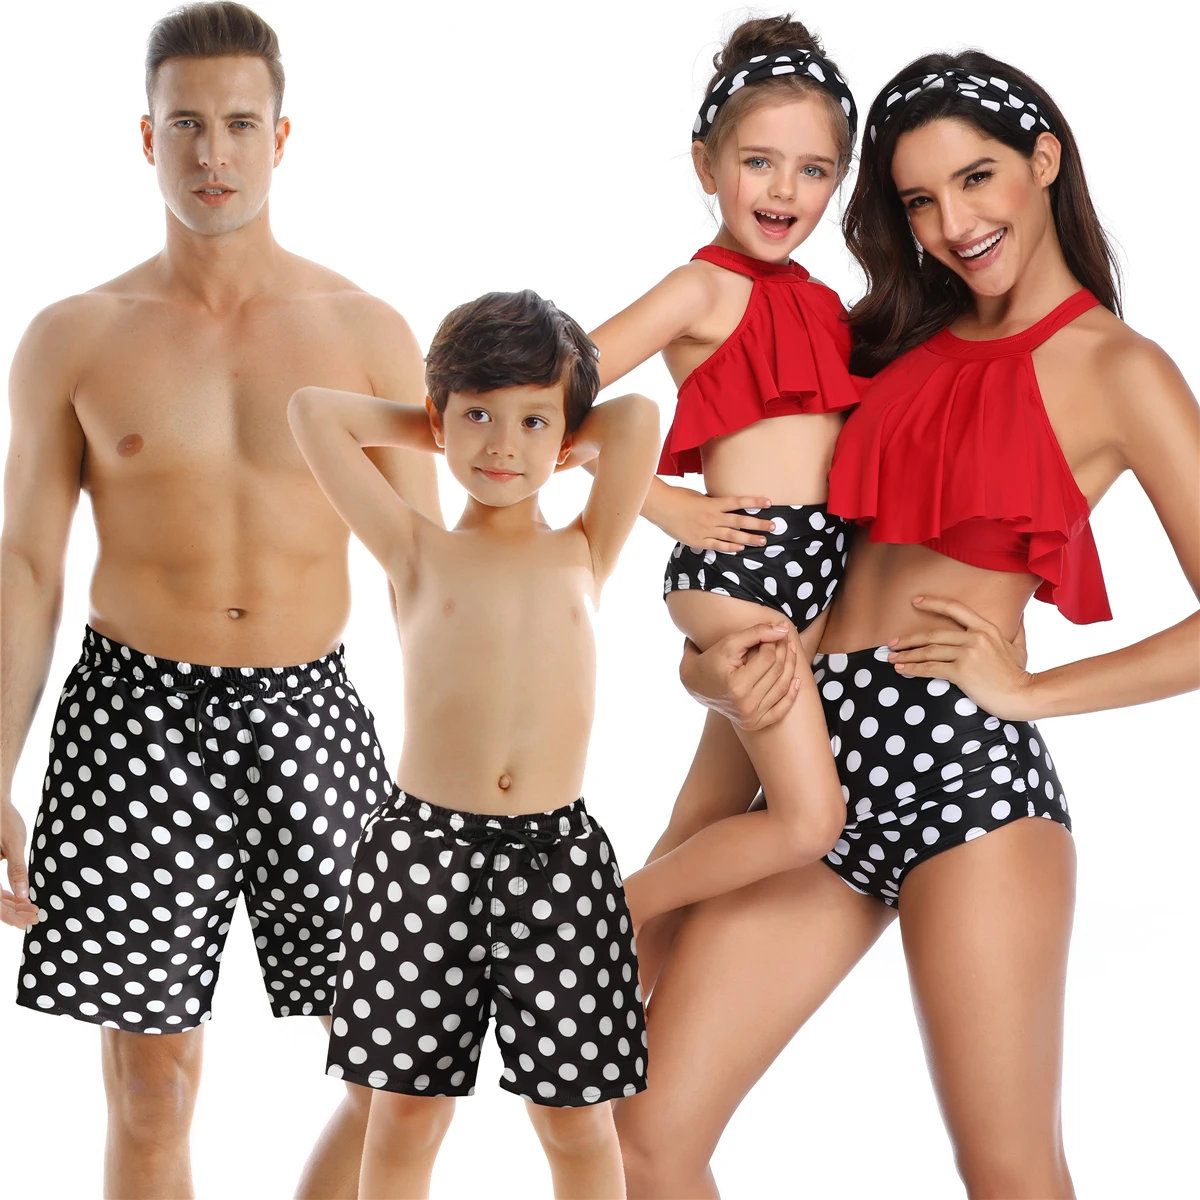 

Семейный комплект, купальный костюм, леопардовые трусы для матери, дочери, отца, сына, купальник для девочек, летний купальный костюм, пляжна...